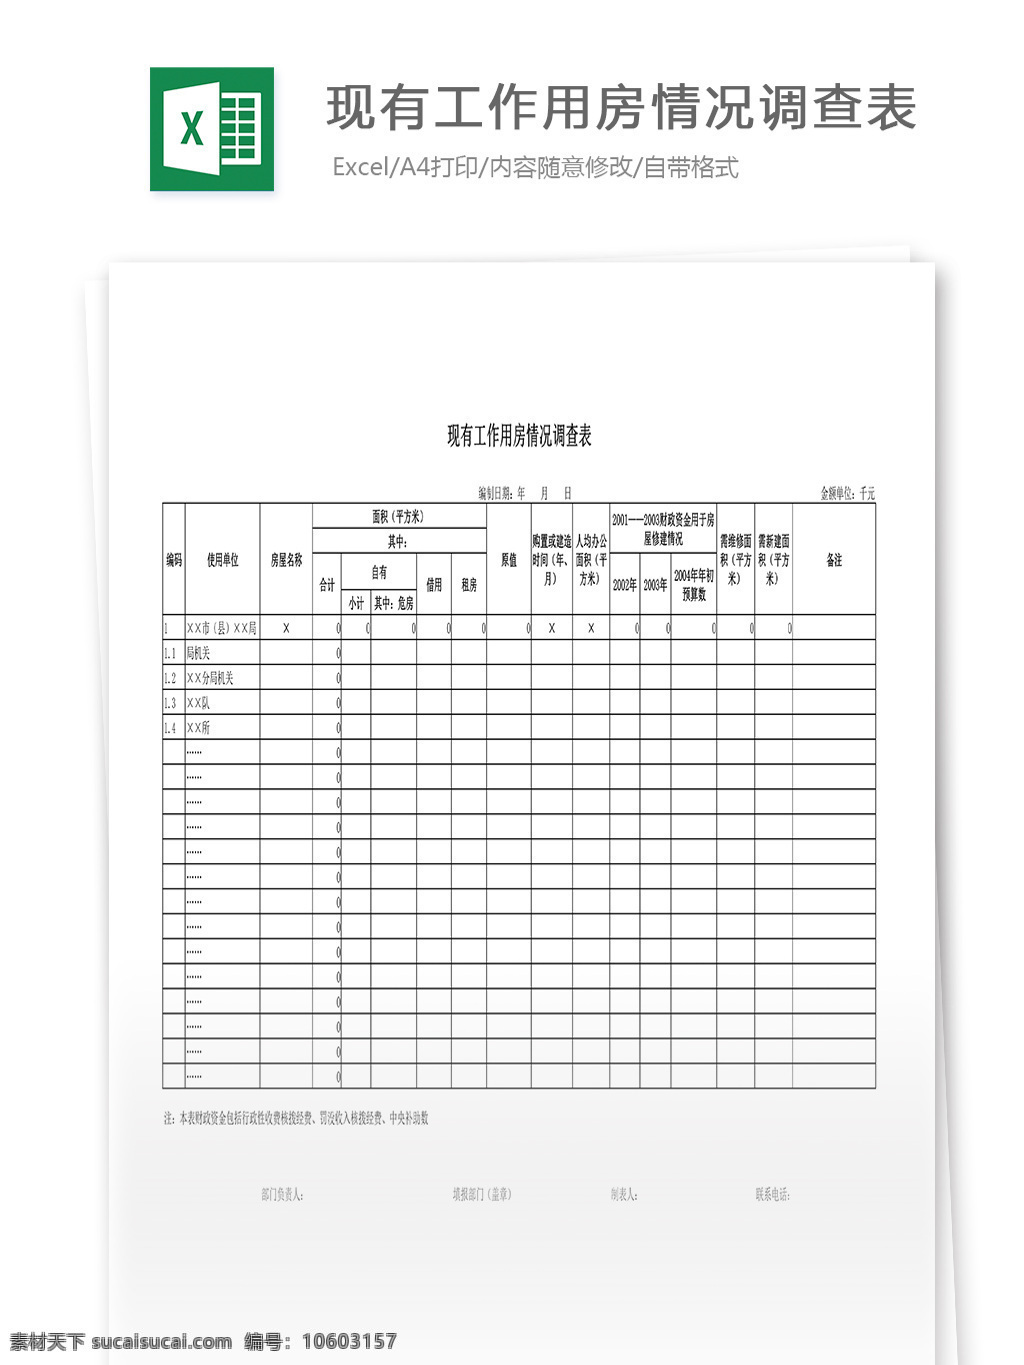 现有 工作 用房 情况 调查表 表格 表格模板 表格设计 图表